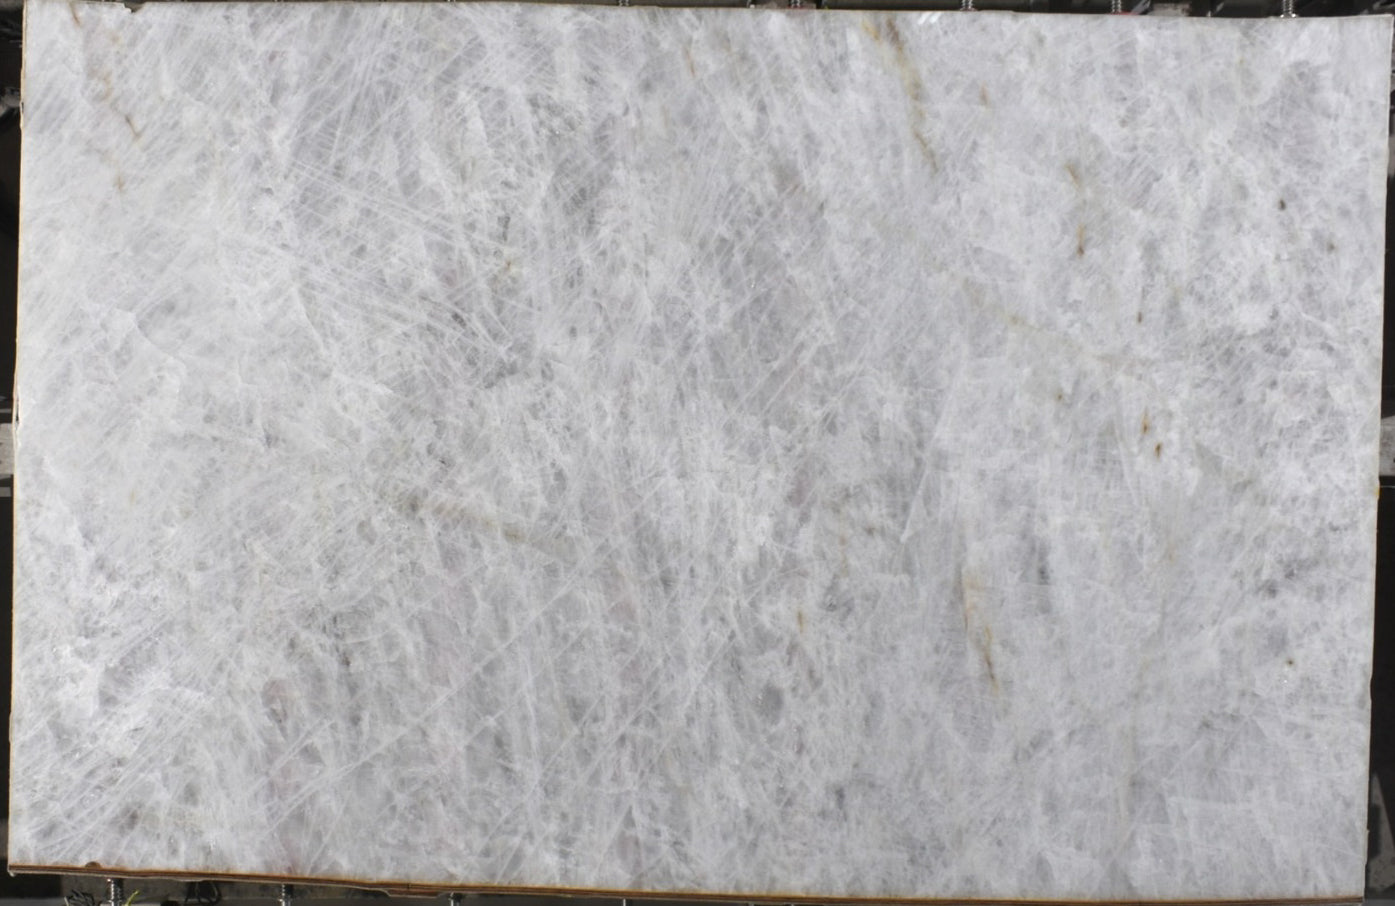  White Diamond A2 Standard Quartzite Slab 3/4 - 14100#49 -  VS 73x116 